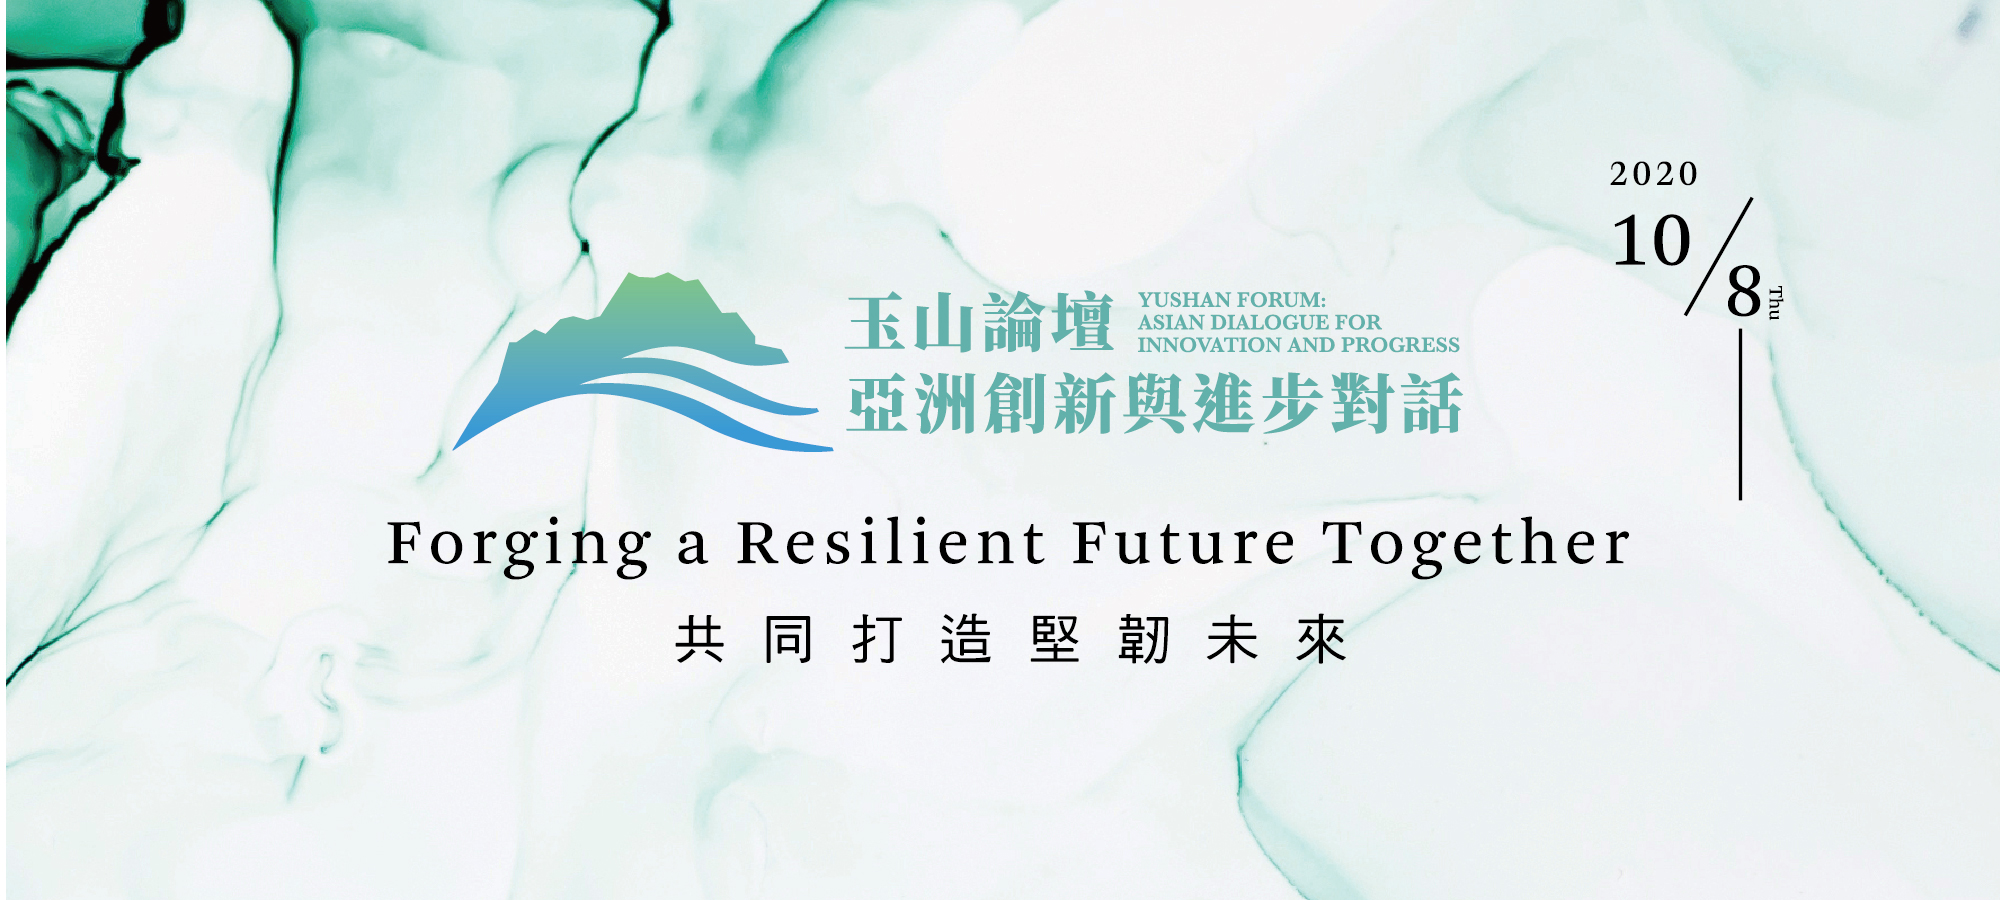 2020年玉山論壇：疫後時期，臺灣與區域夥伴共同打造堅韌未來